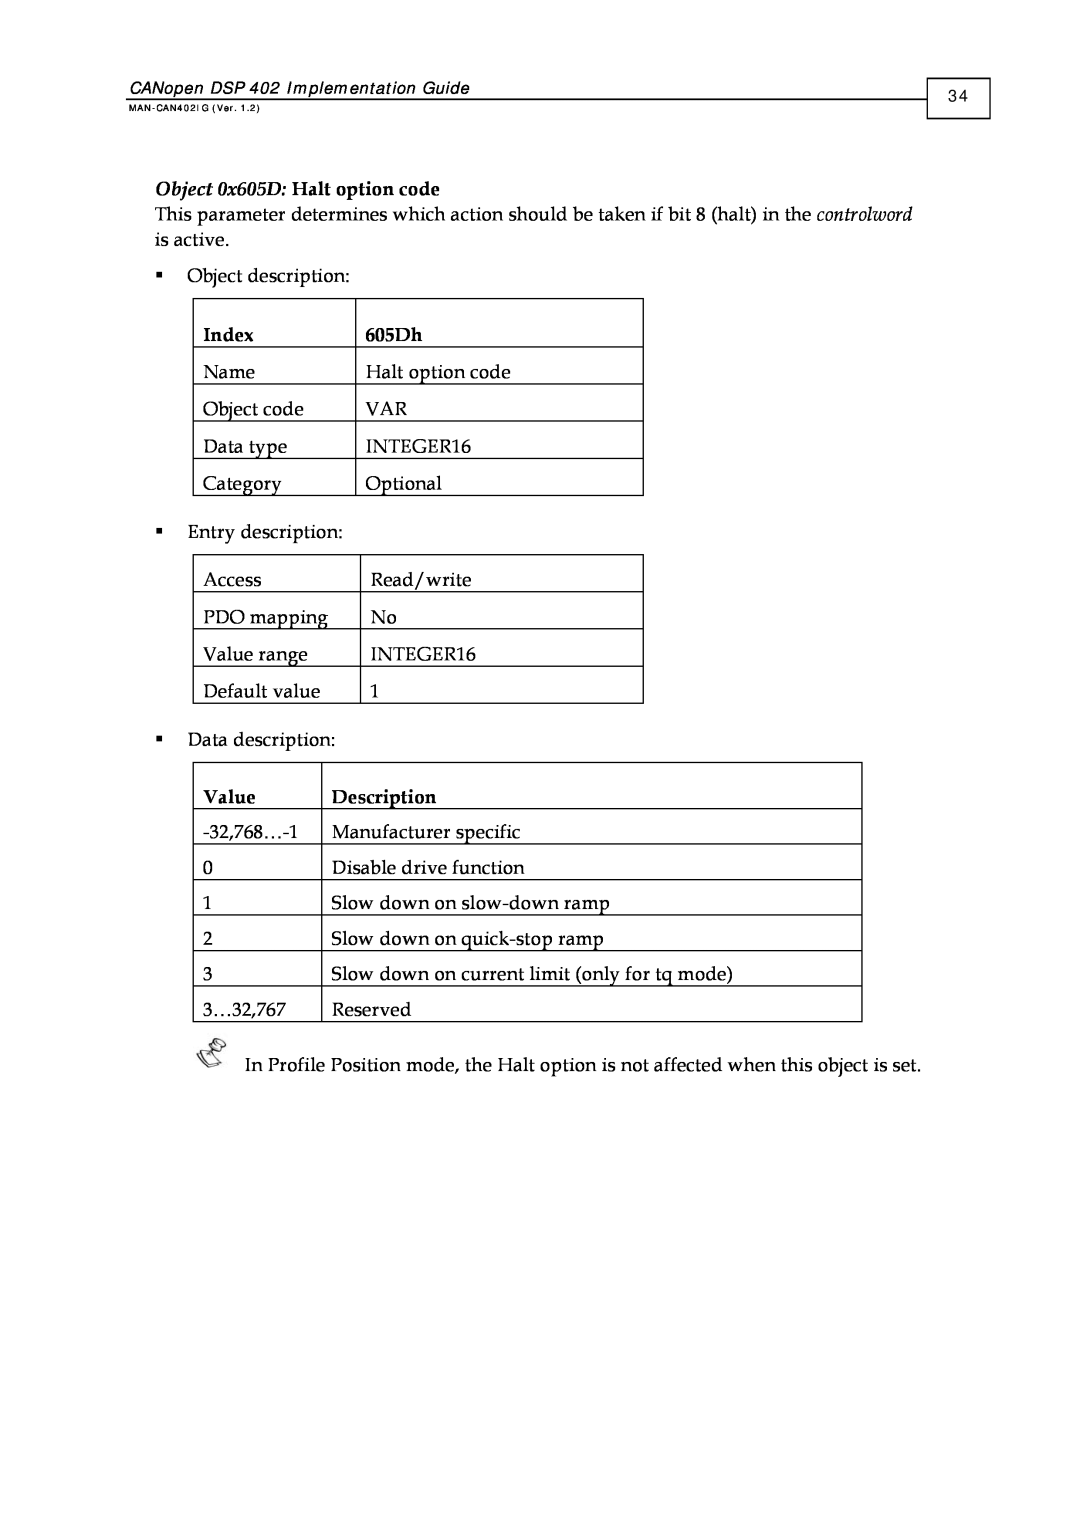 Elmo DSP 402 manual Object 0x605D Halt option code, Index, 605Dh, Value, Description 